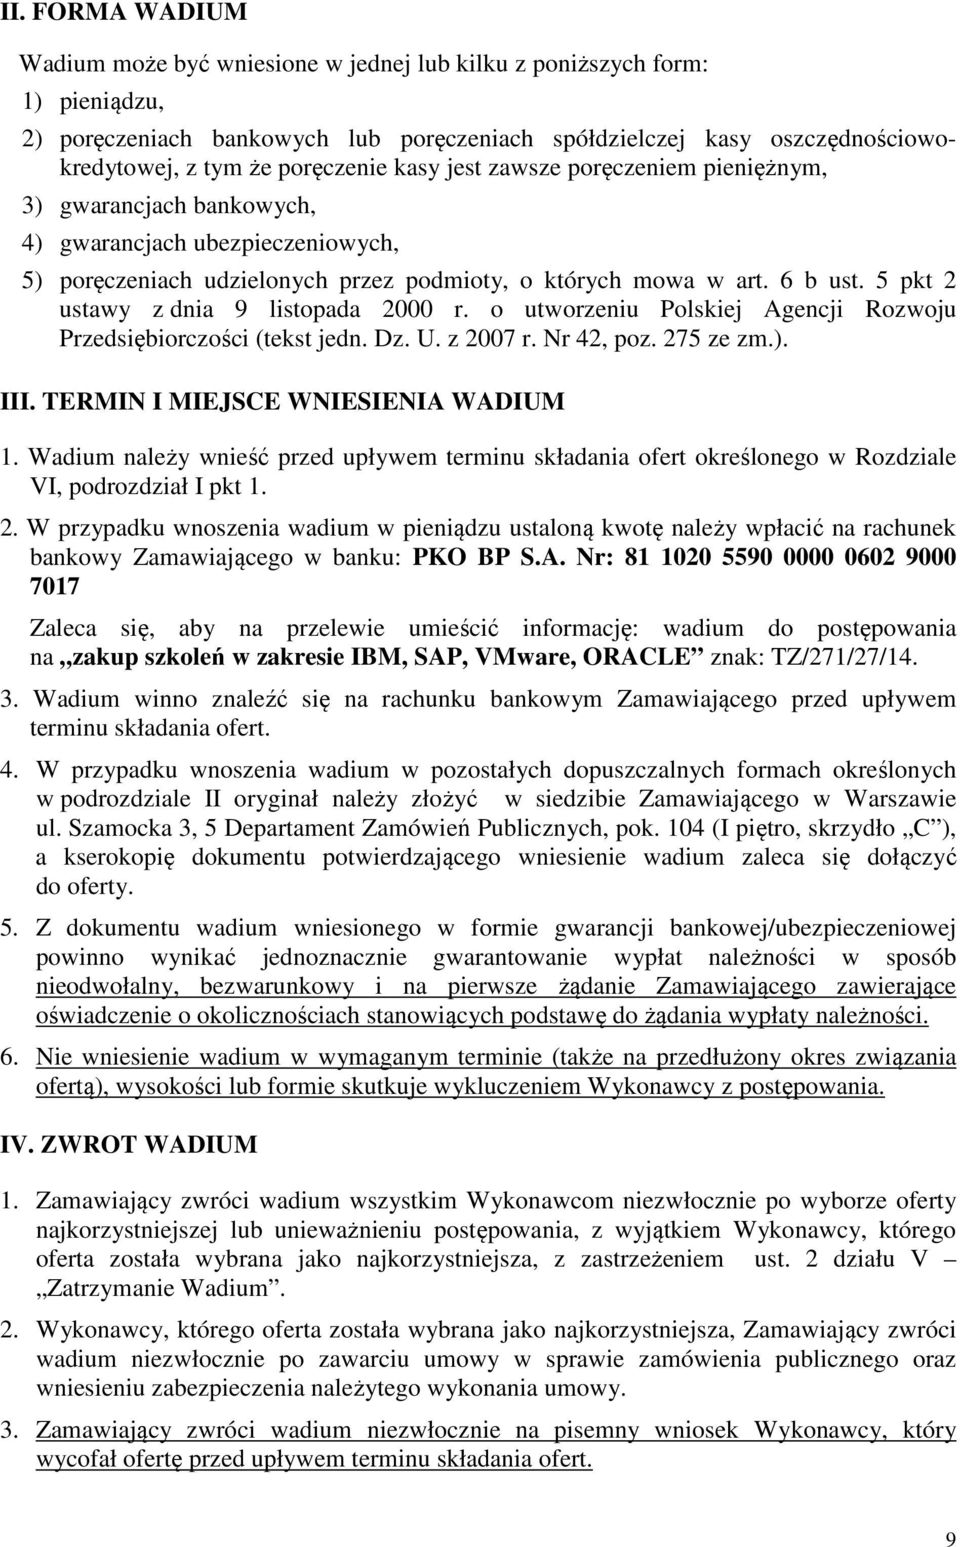 5 pkt 2 ustawy z dnia 9 listopada 2000 r. o utworzeniu Polskiej Agencji Rozwoju Przedsiębiorczości (tekst jedn. Dz. U. z 2007 r. Nr 42, poz. 275 ze zm.). III. TERMIN I MIEJSCE WNIESIENIA WADIUM 1.